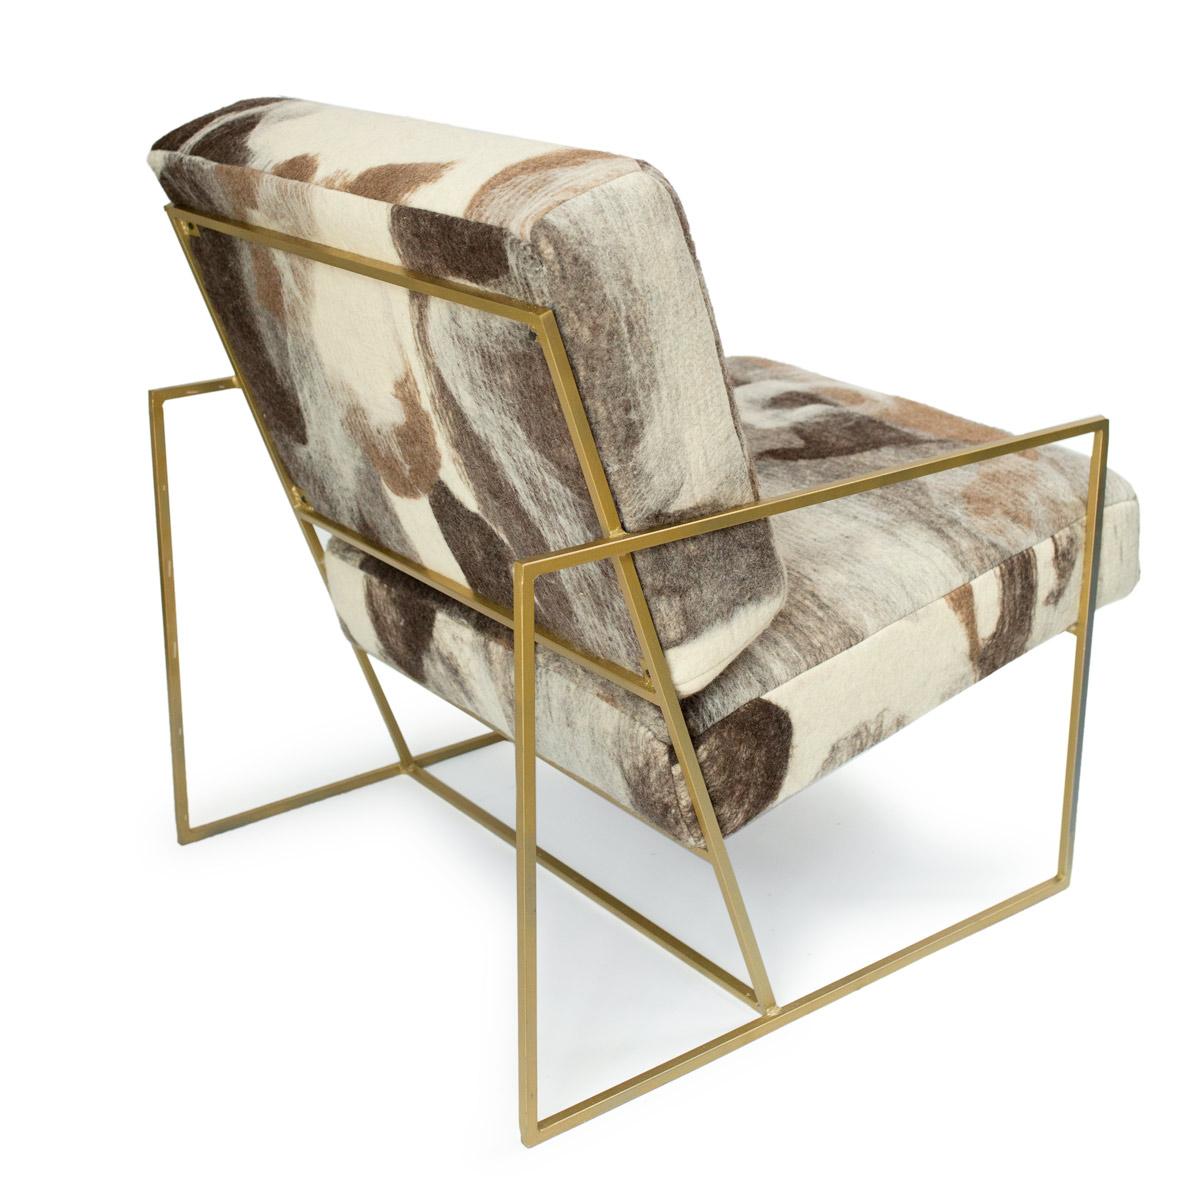 La chaise Steele est une solide structure métallique en acier proposée en noir mat ou en couleur laiton et constitue l'écrin parfait pour le tissu en laine feutrée de JG SWITZER. 

Le métrage de tissu est un tissu de laine 